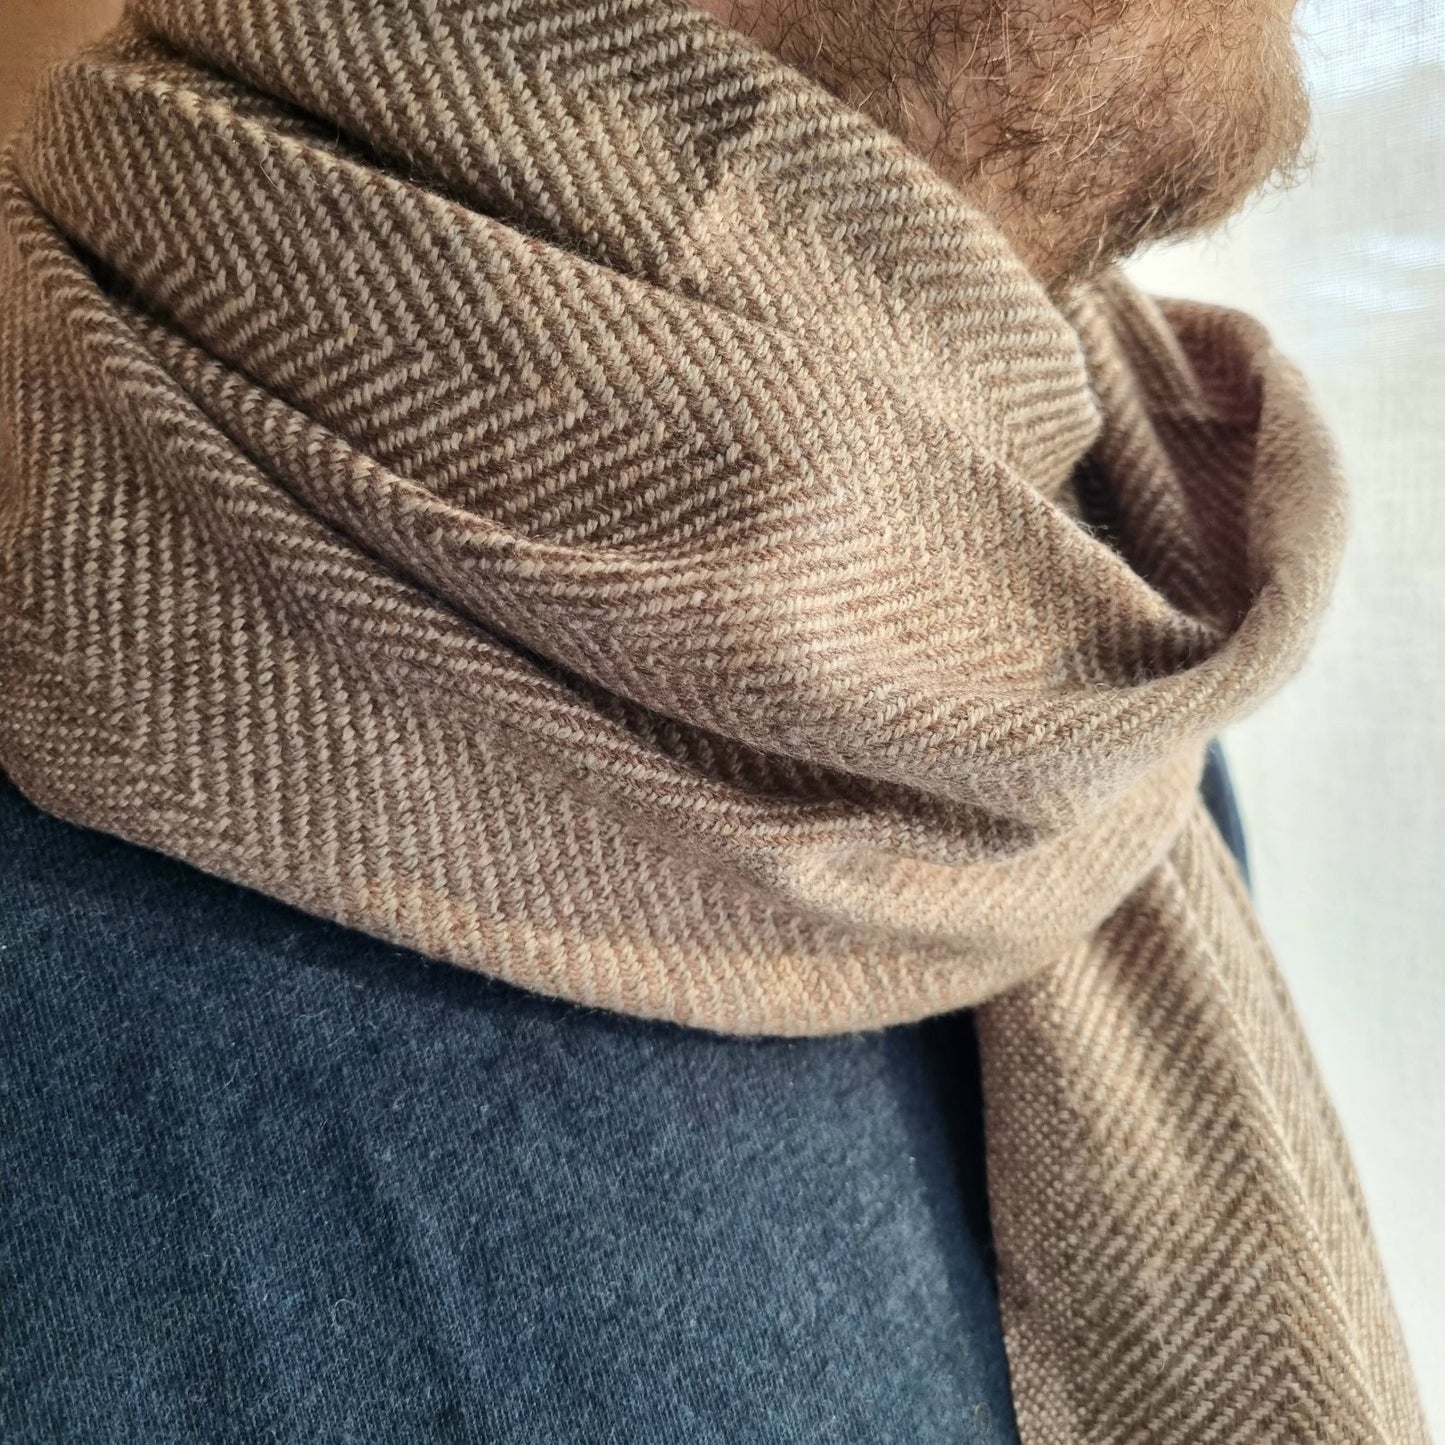 Super soft wool scarves